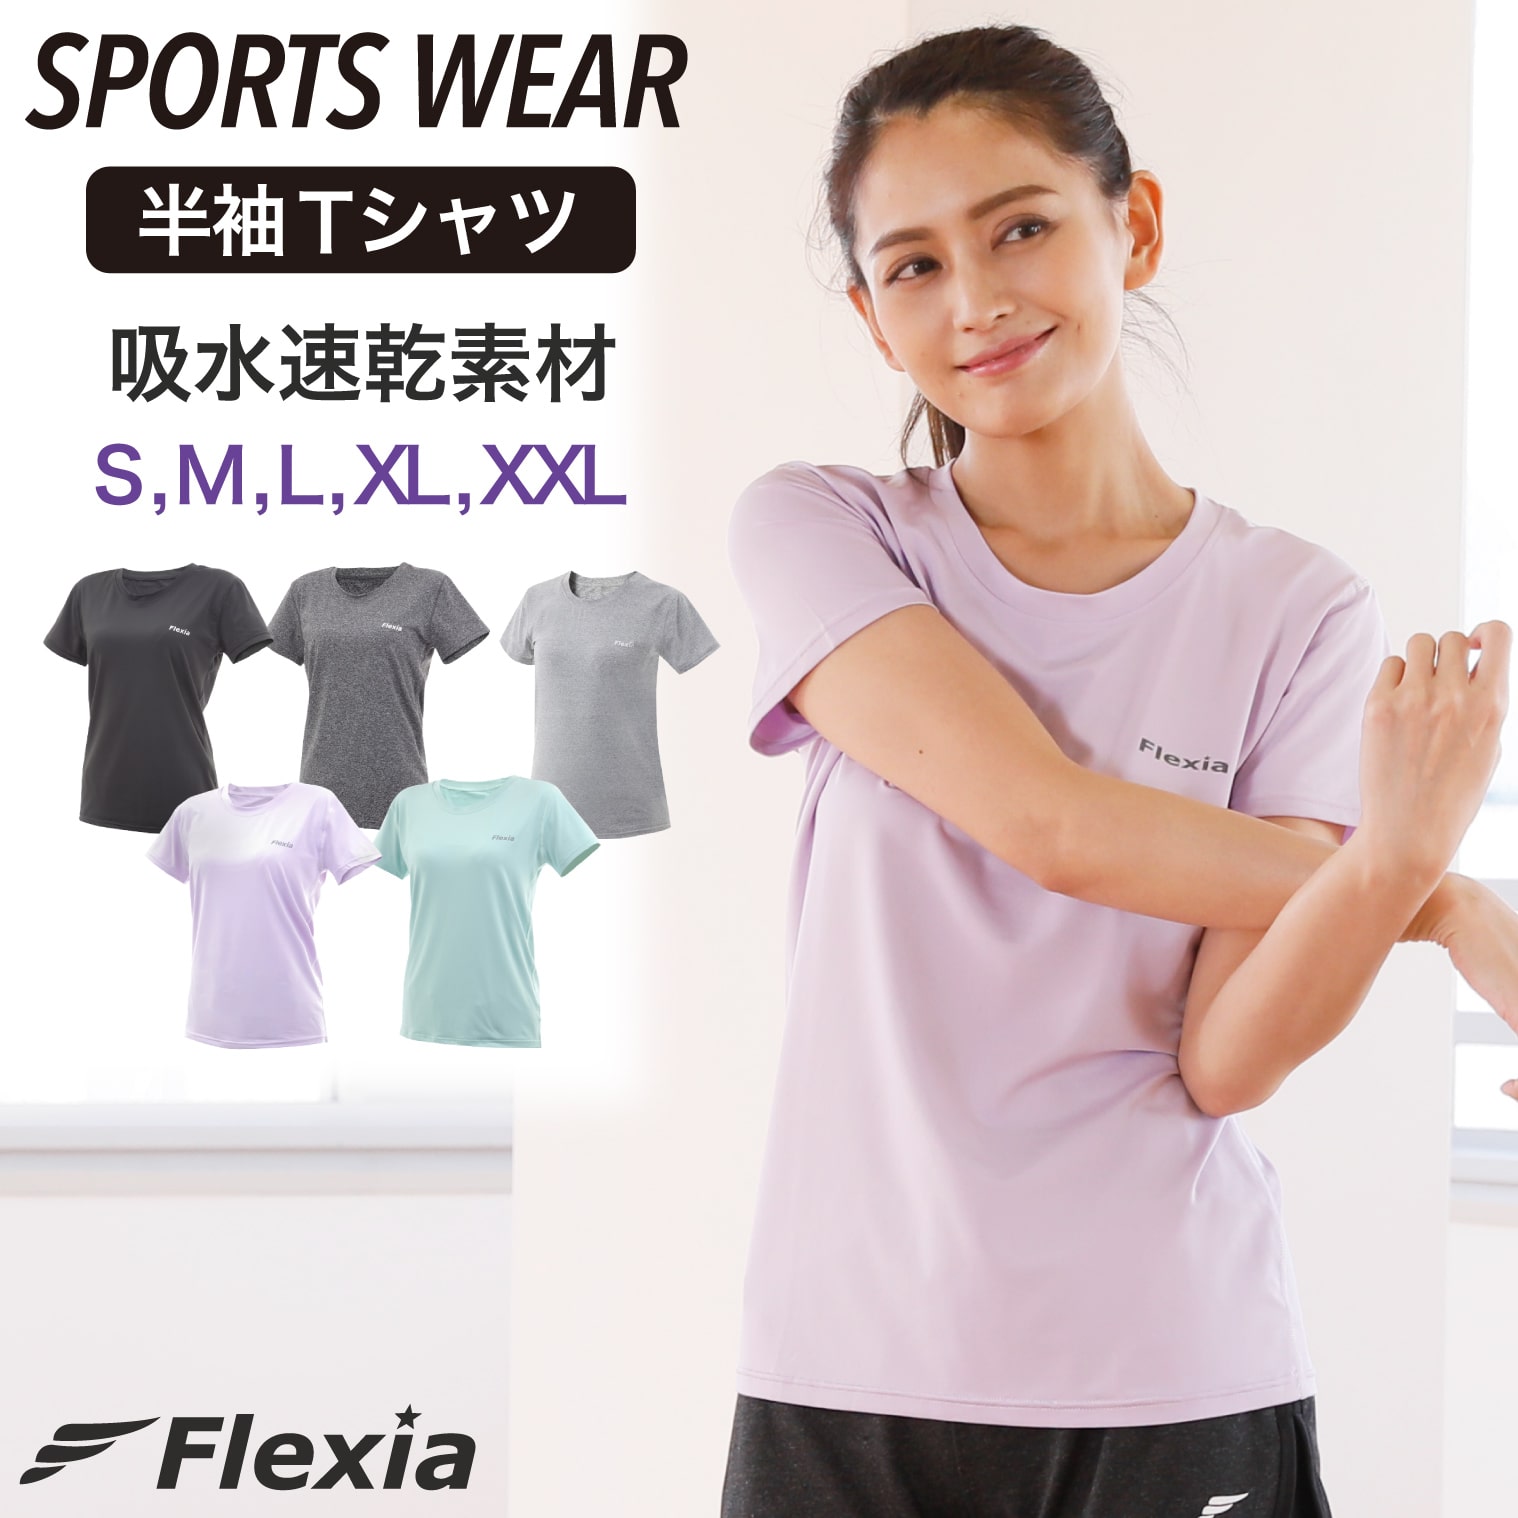 [ 本日限定P3倍 ] Flexia (フレキシア) 半袖 Tシャツ カラー5色 スポーツウェア レ ...